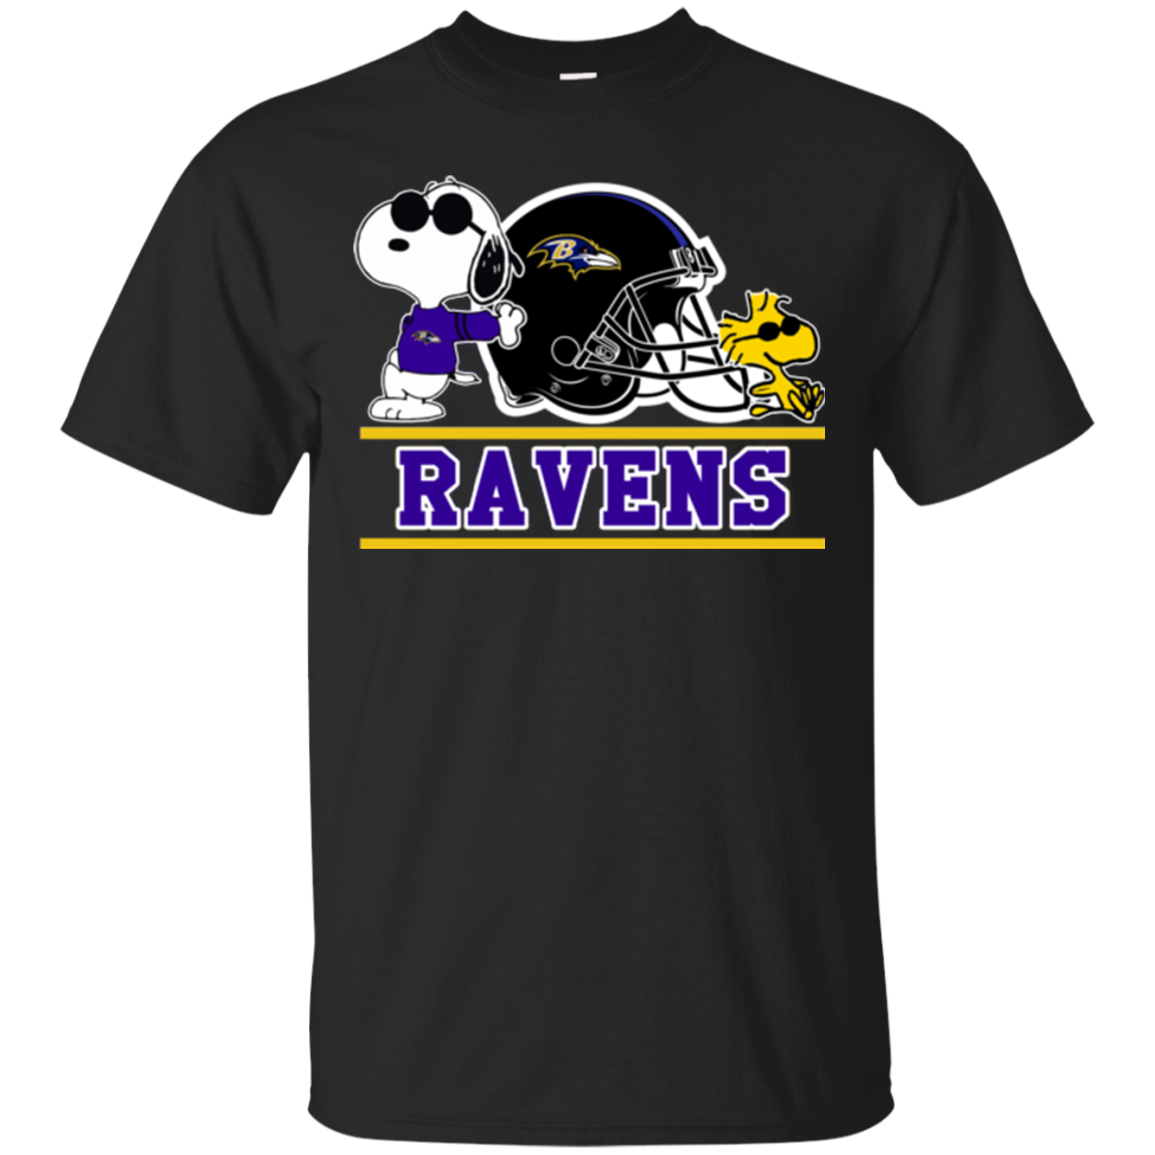 Snoopy Baltimore Ravens T shirts - Teesmiley